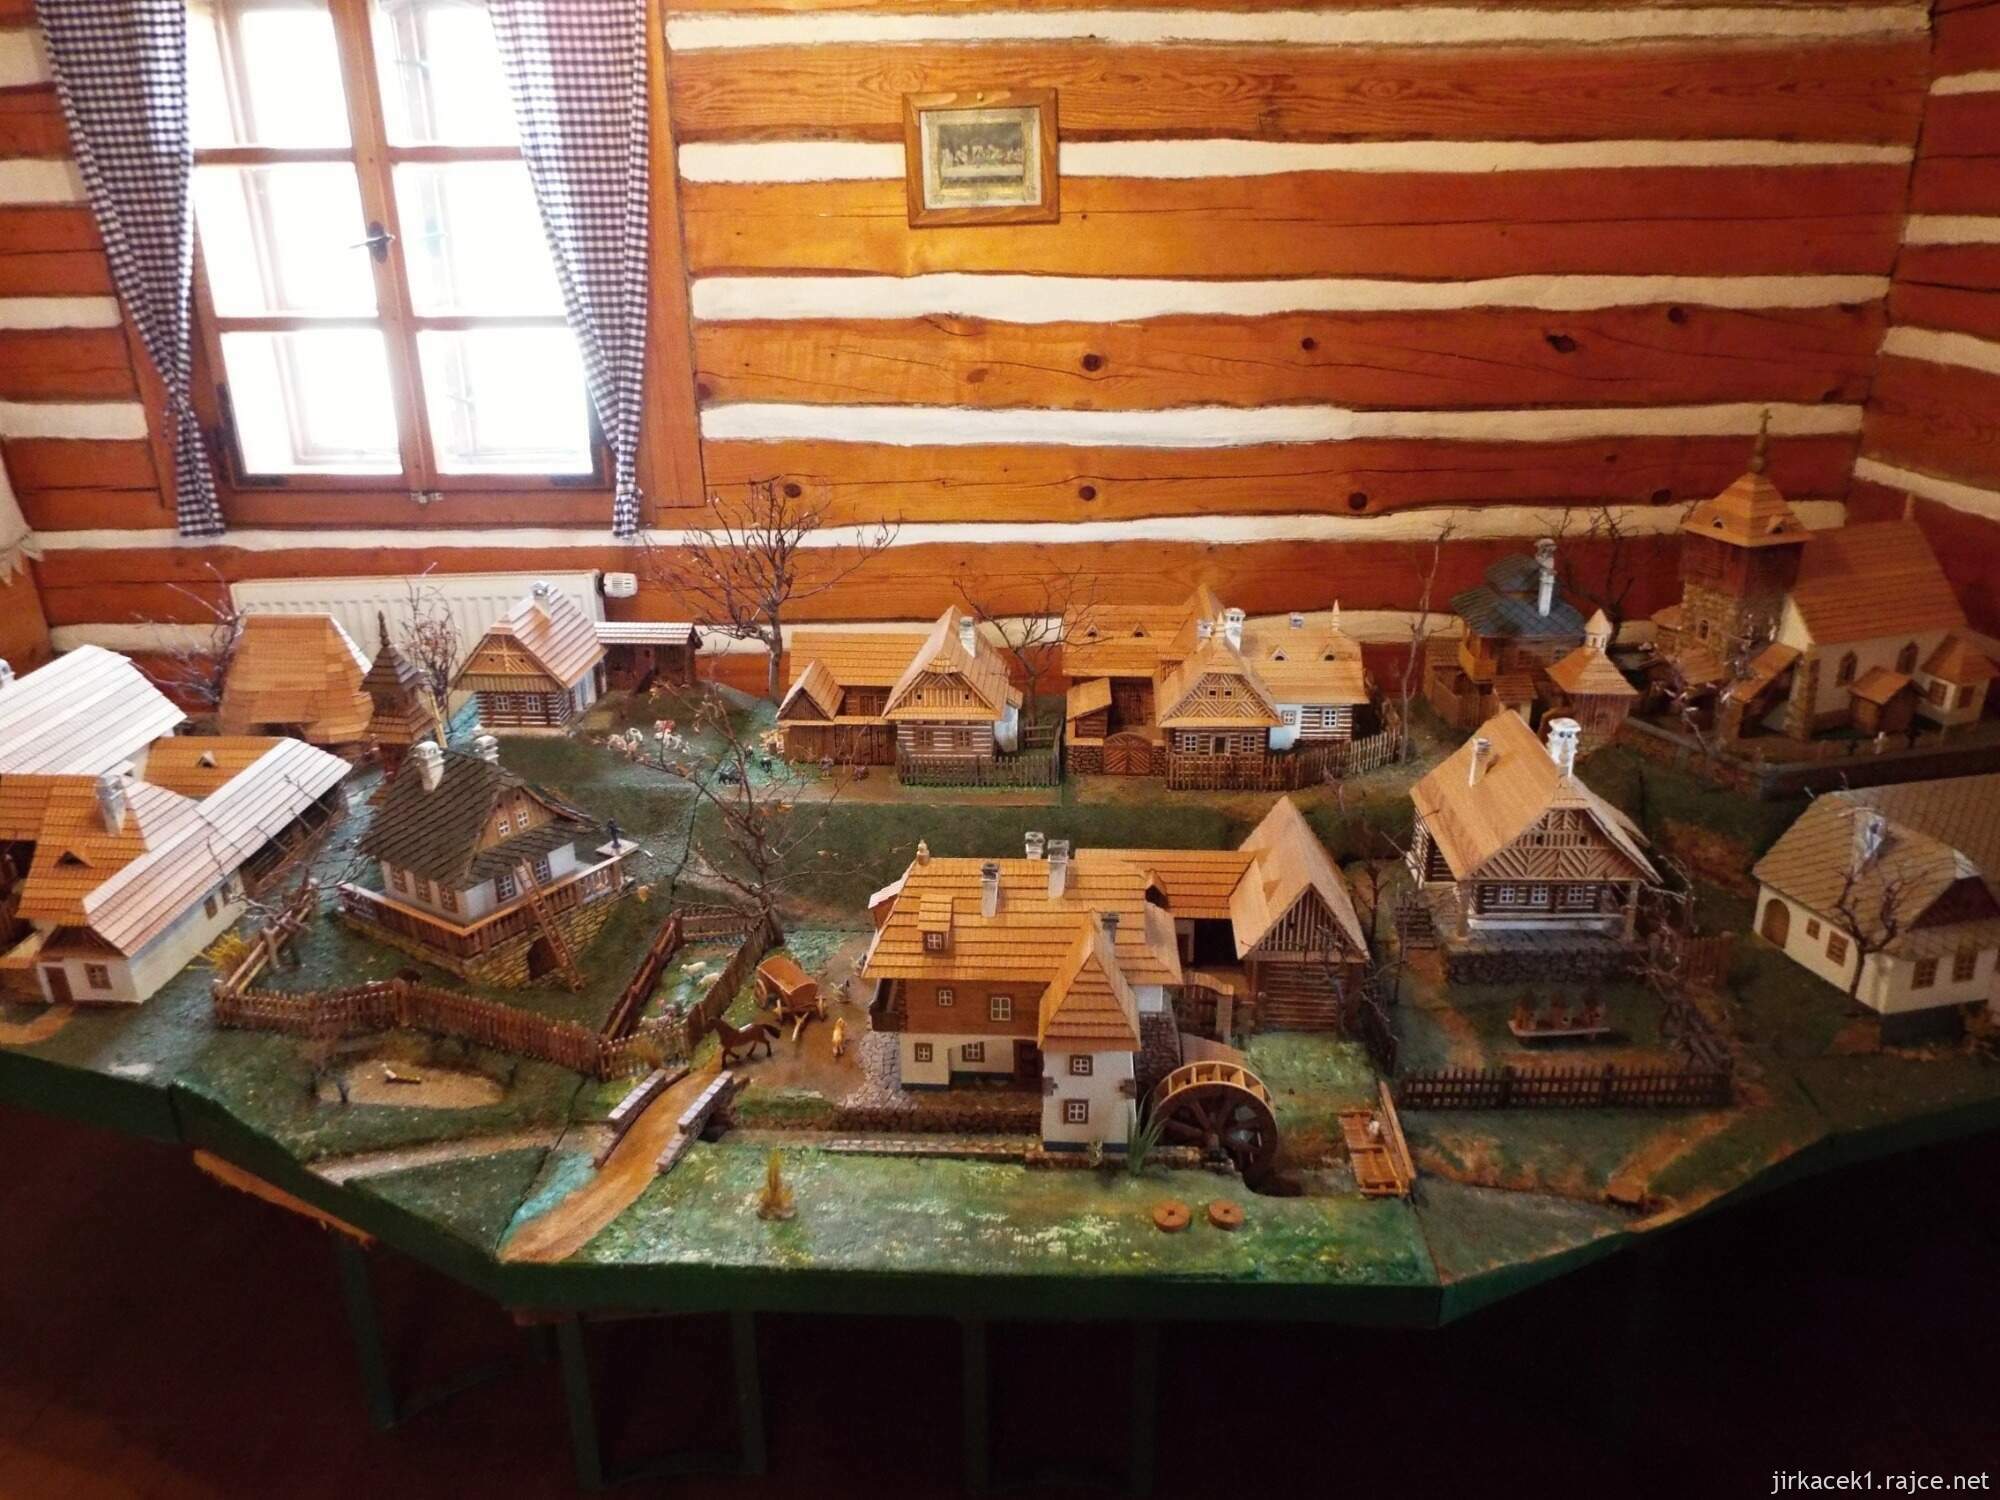 14 - Muzeum Horní Smržov 21 - druhá místnost - model vesnice